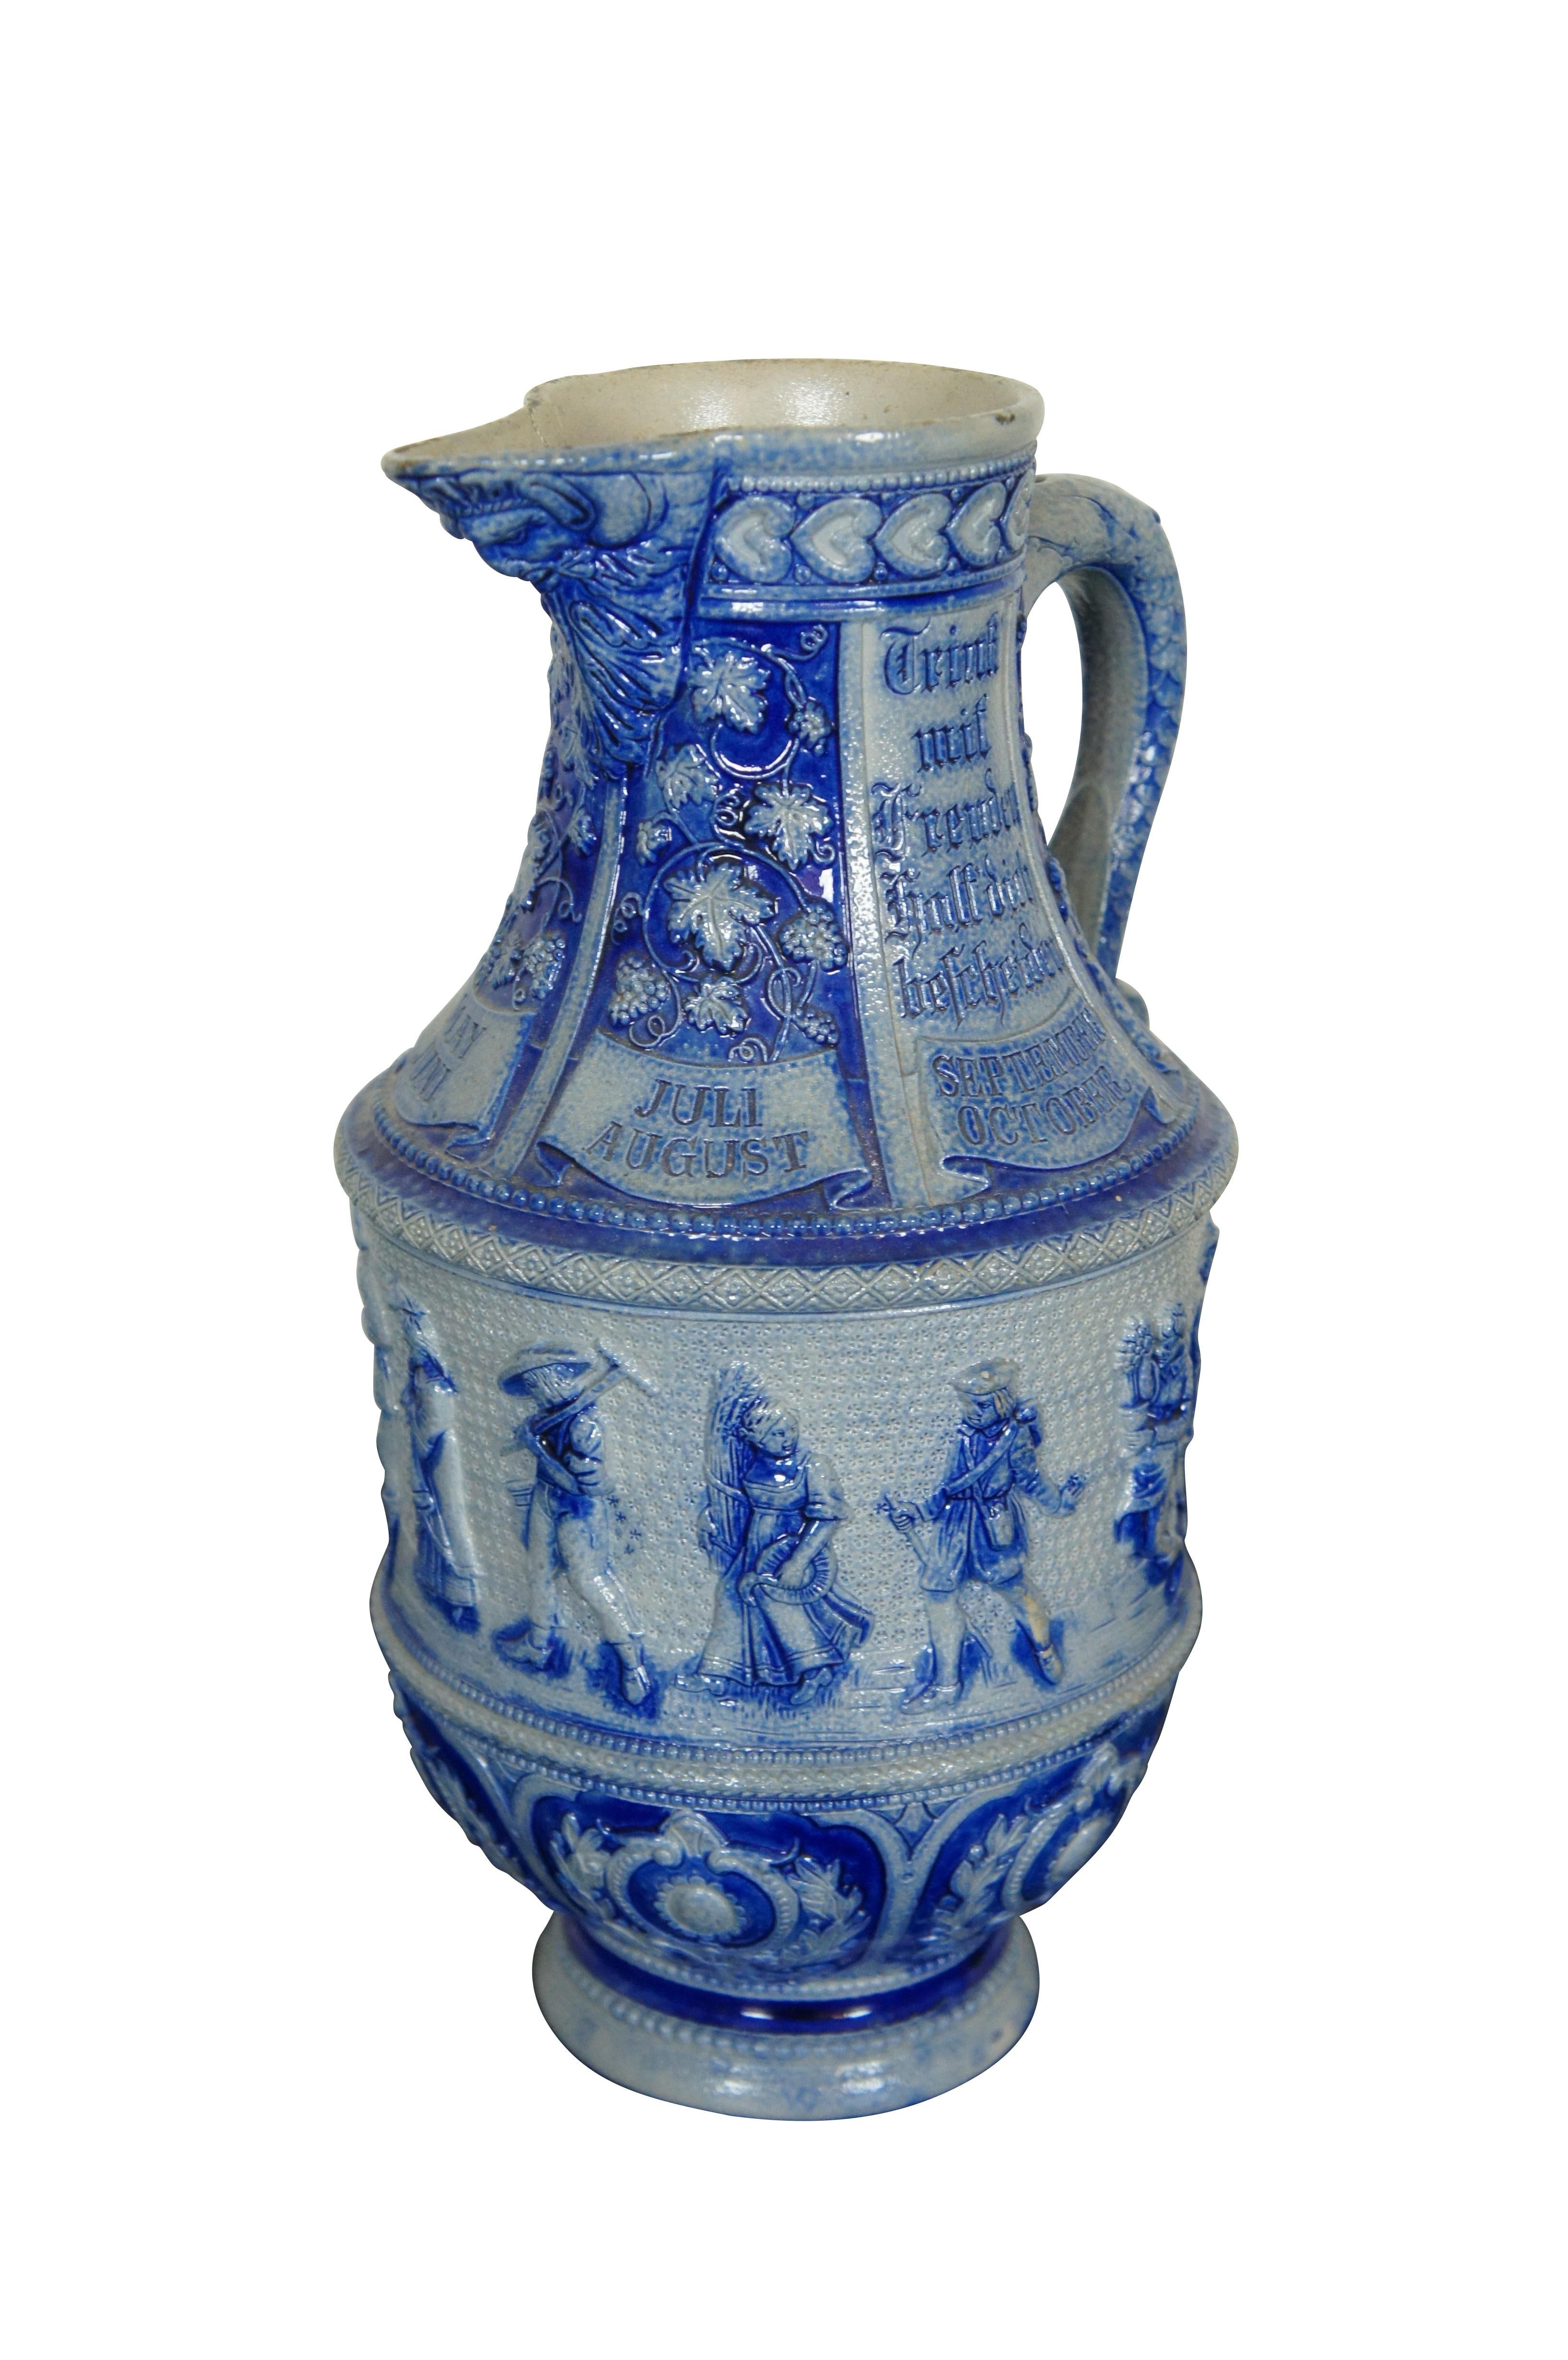 Pichet / cruche / aiguière en grès allemand ancien à glaçure salée bleu cobalt représentant le visage de Dionysos ou Bacchus - Dieu du vin - sur le bec, entouré de vignes / raisins / feuilles et des mois de l'année.  La poignée est ornée d'écailles